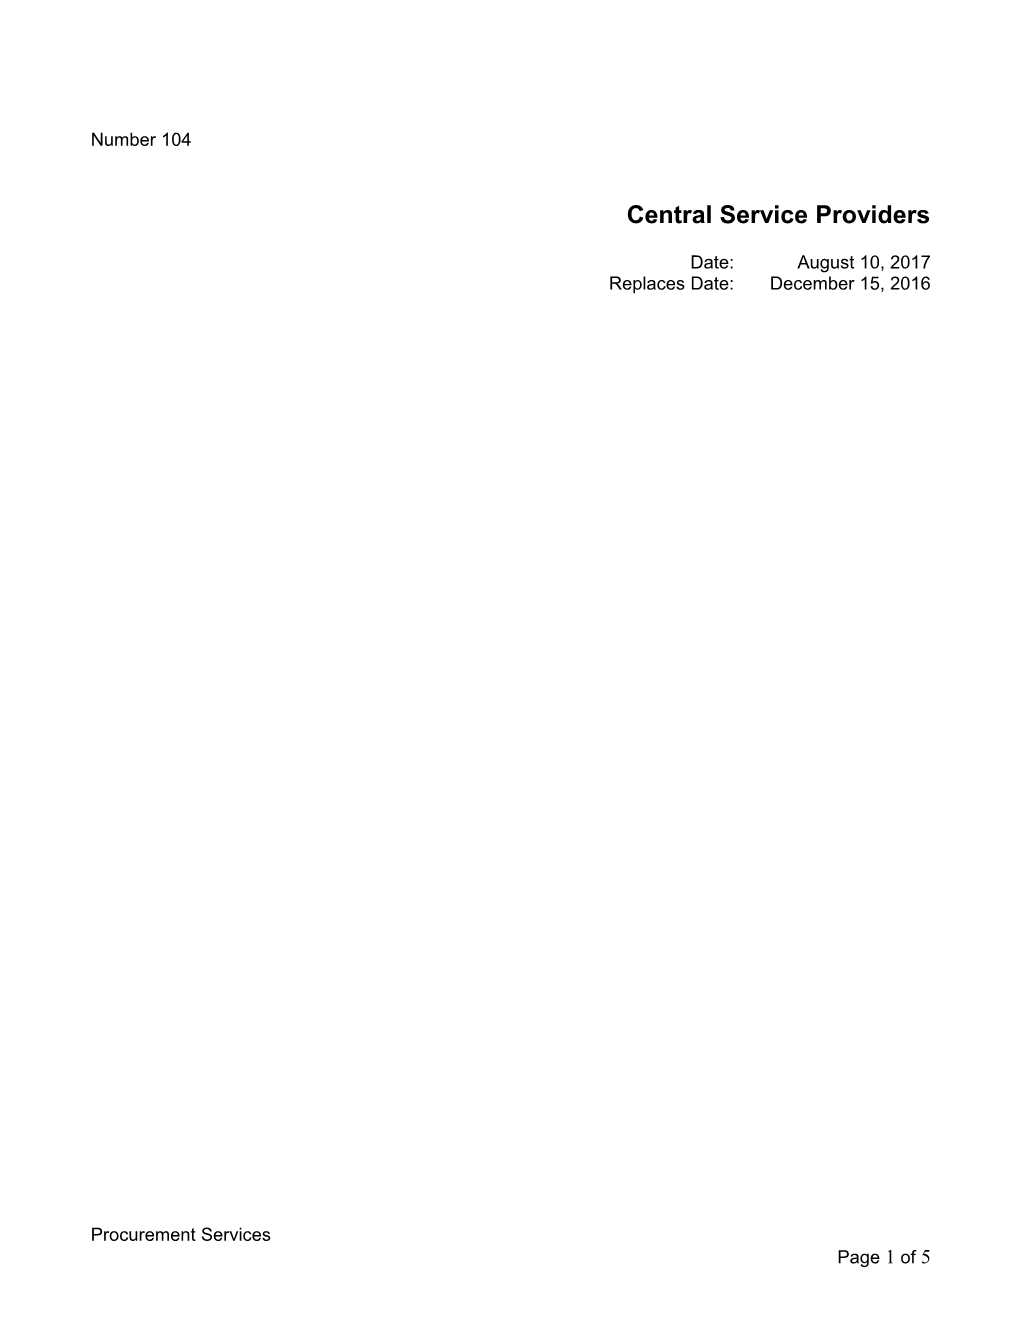 Central Service Providers Purpose